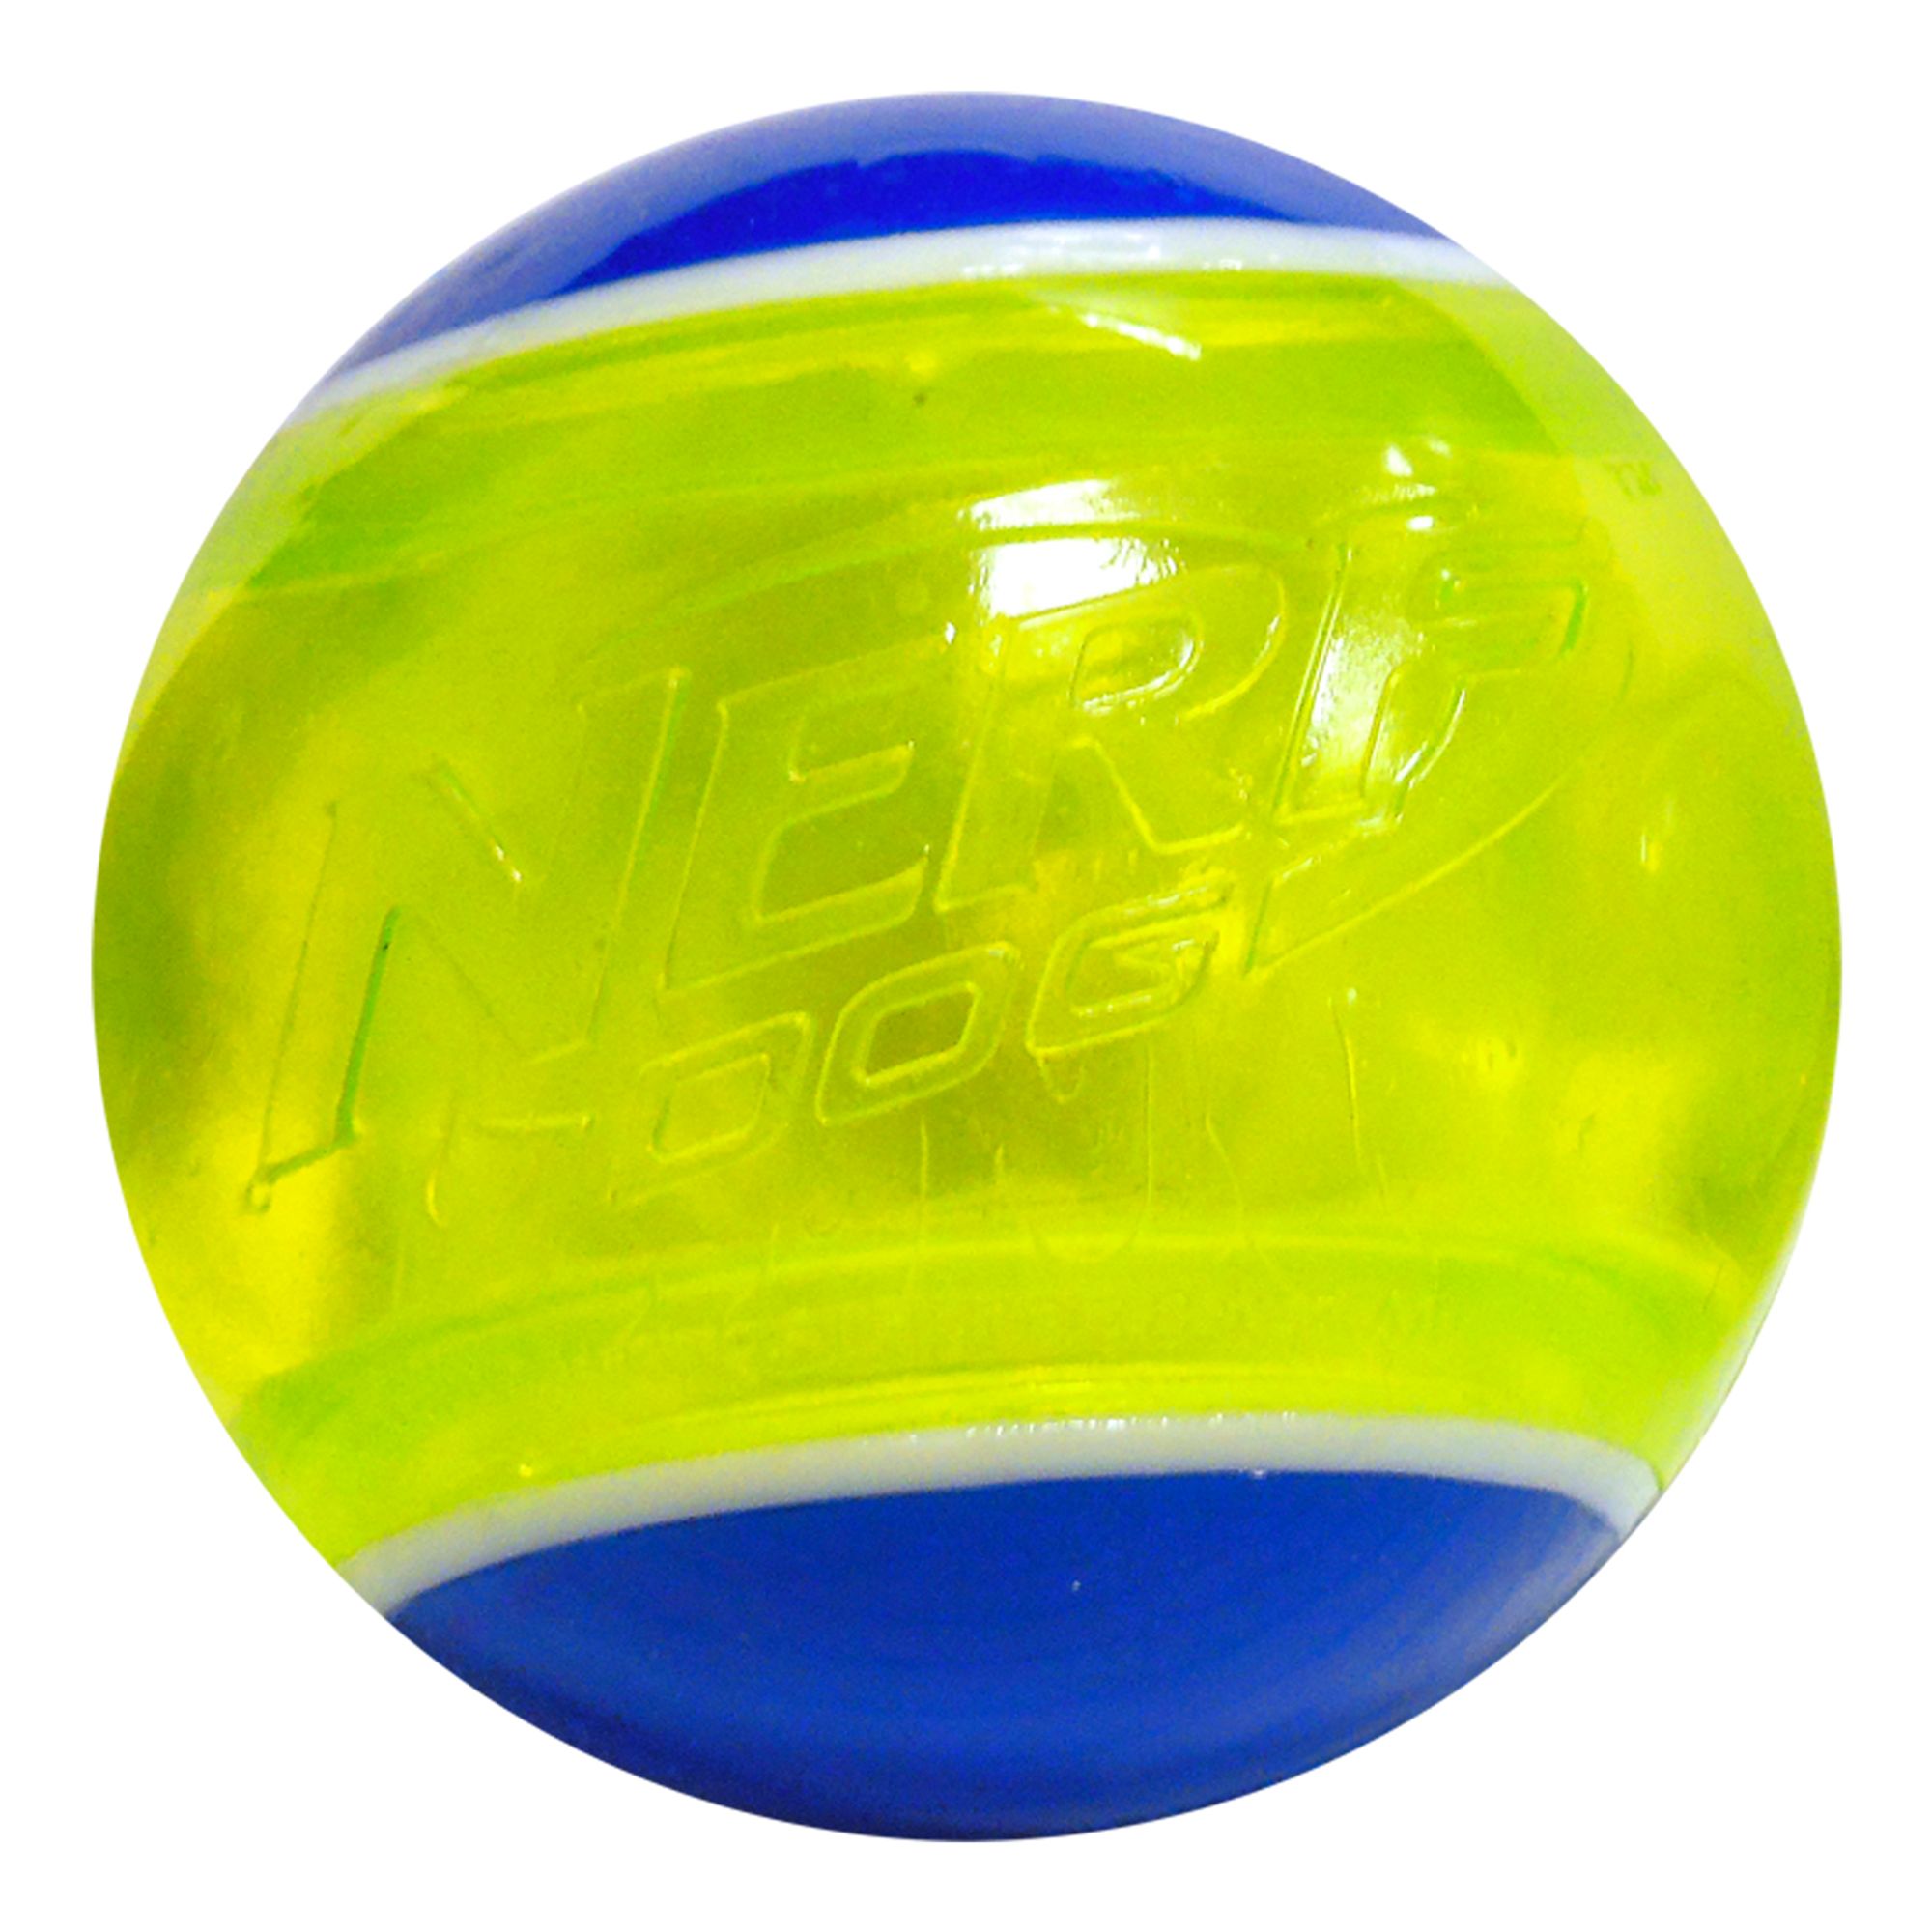 nerf dog led ball